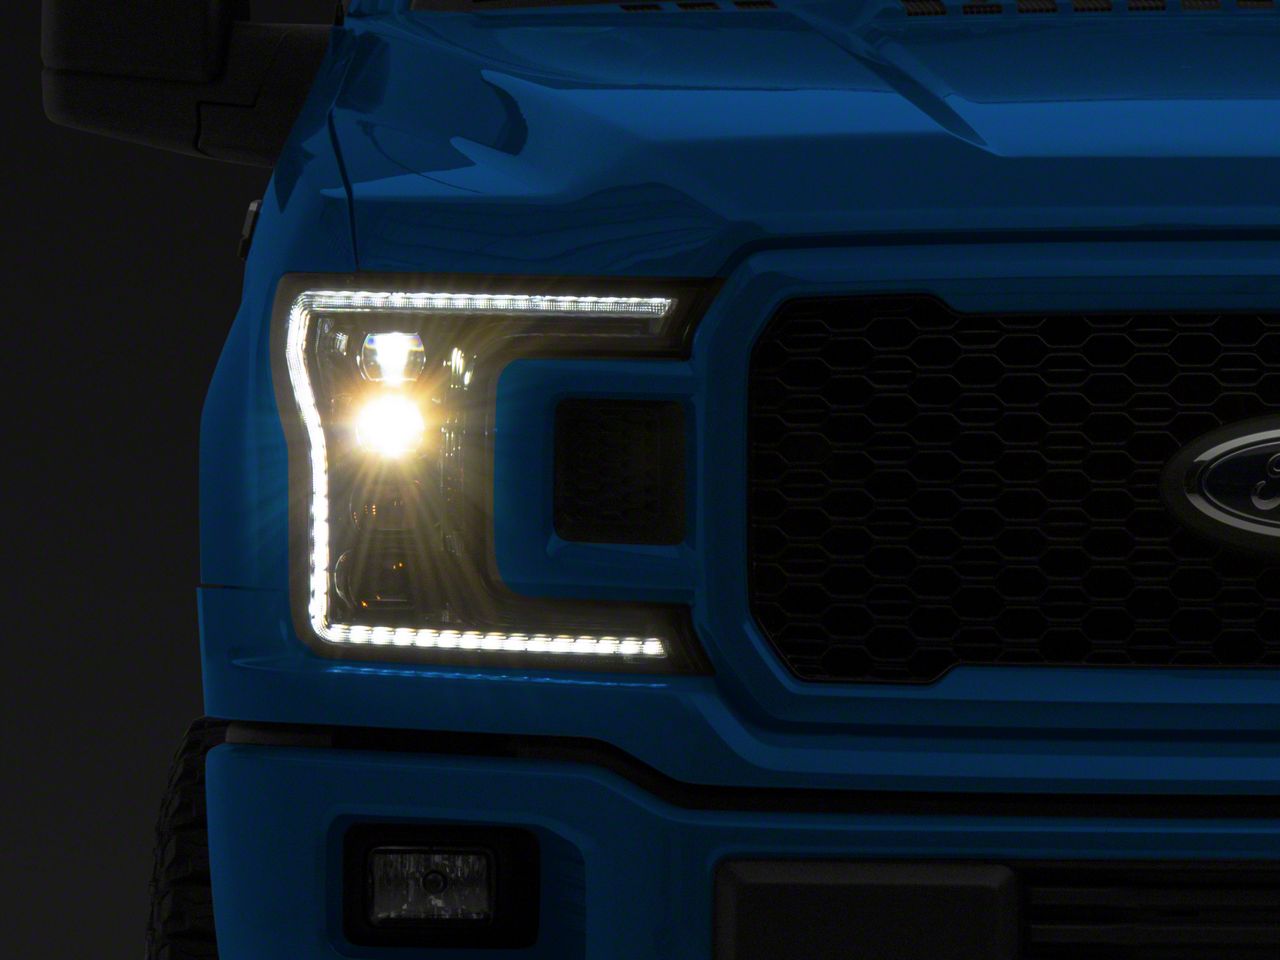 led headlights for trucks